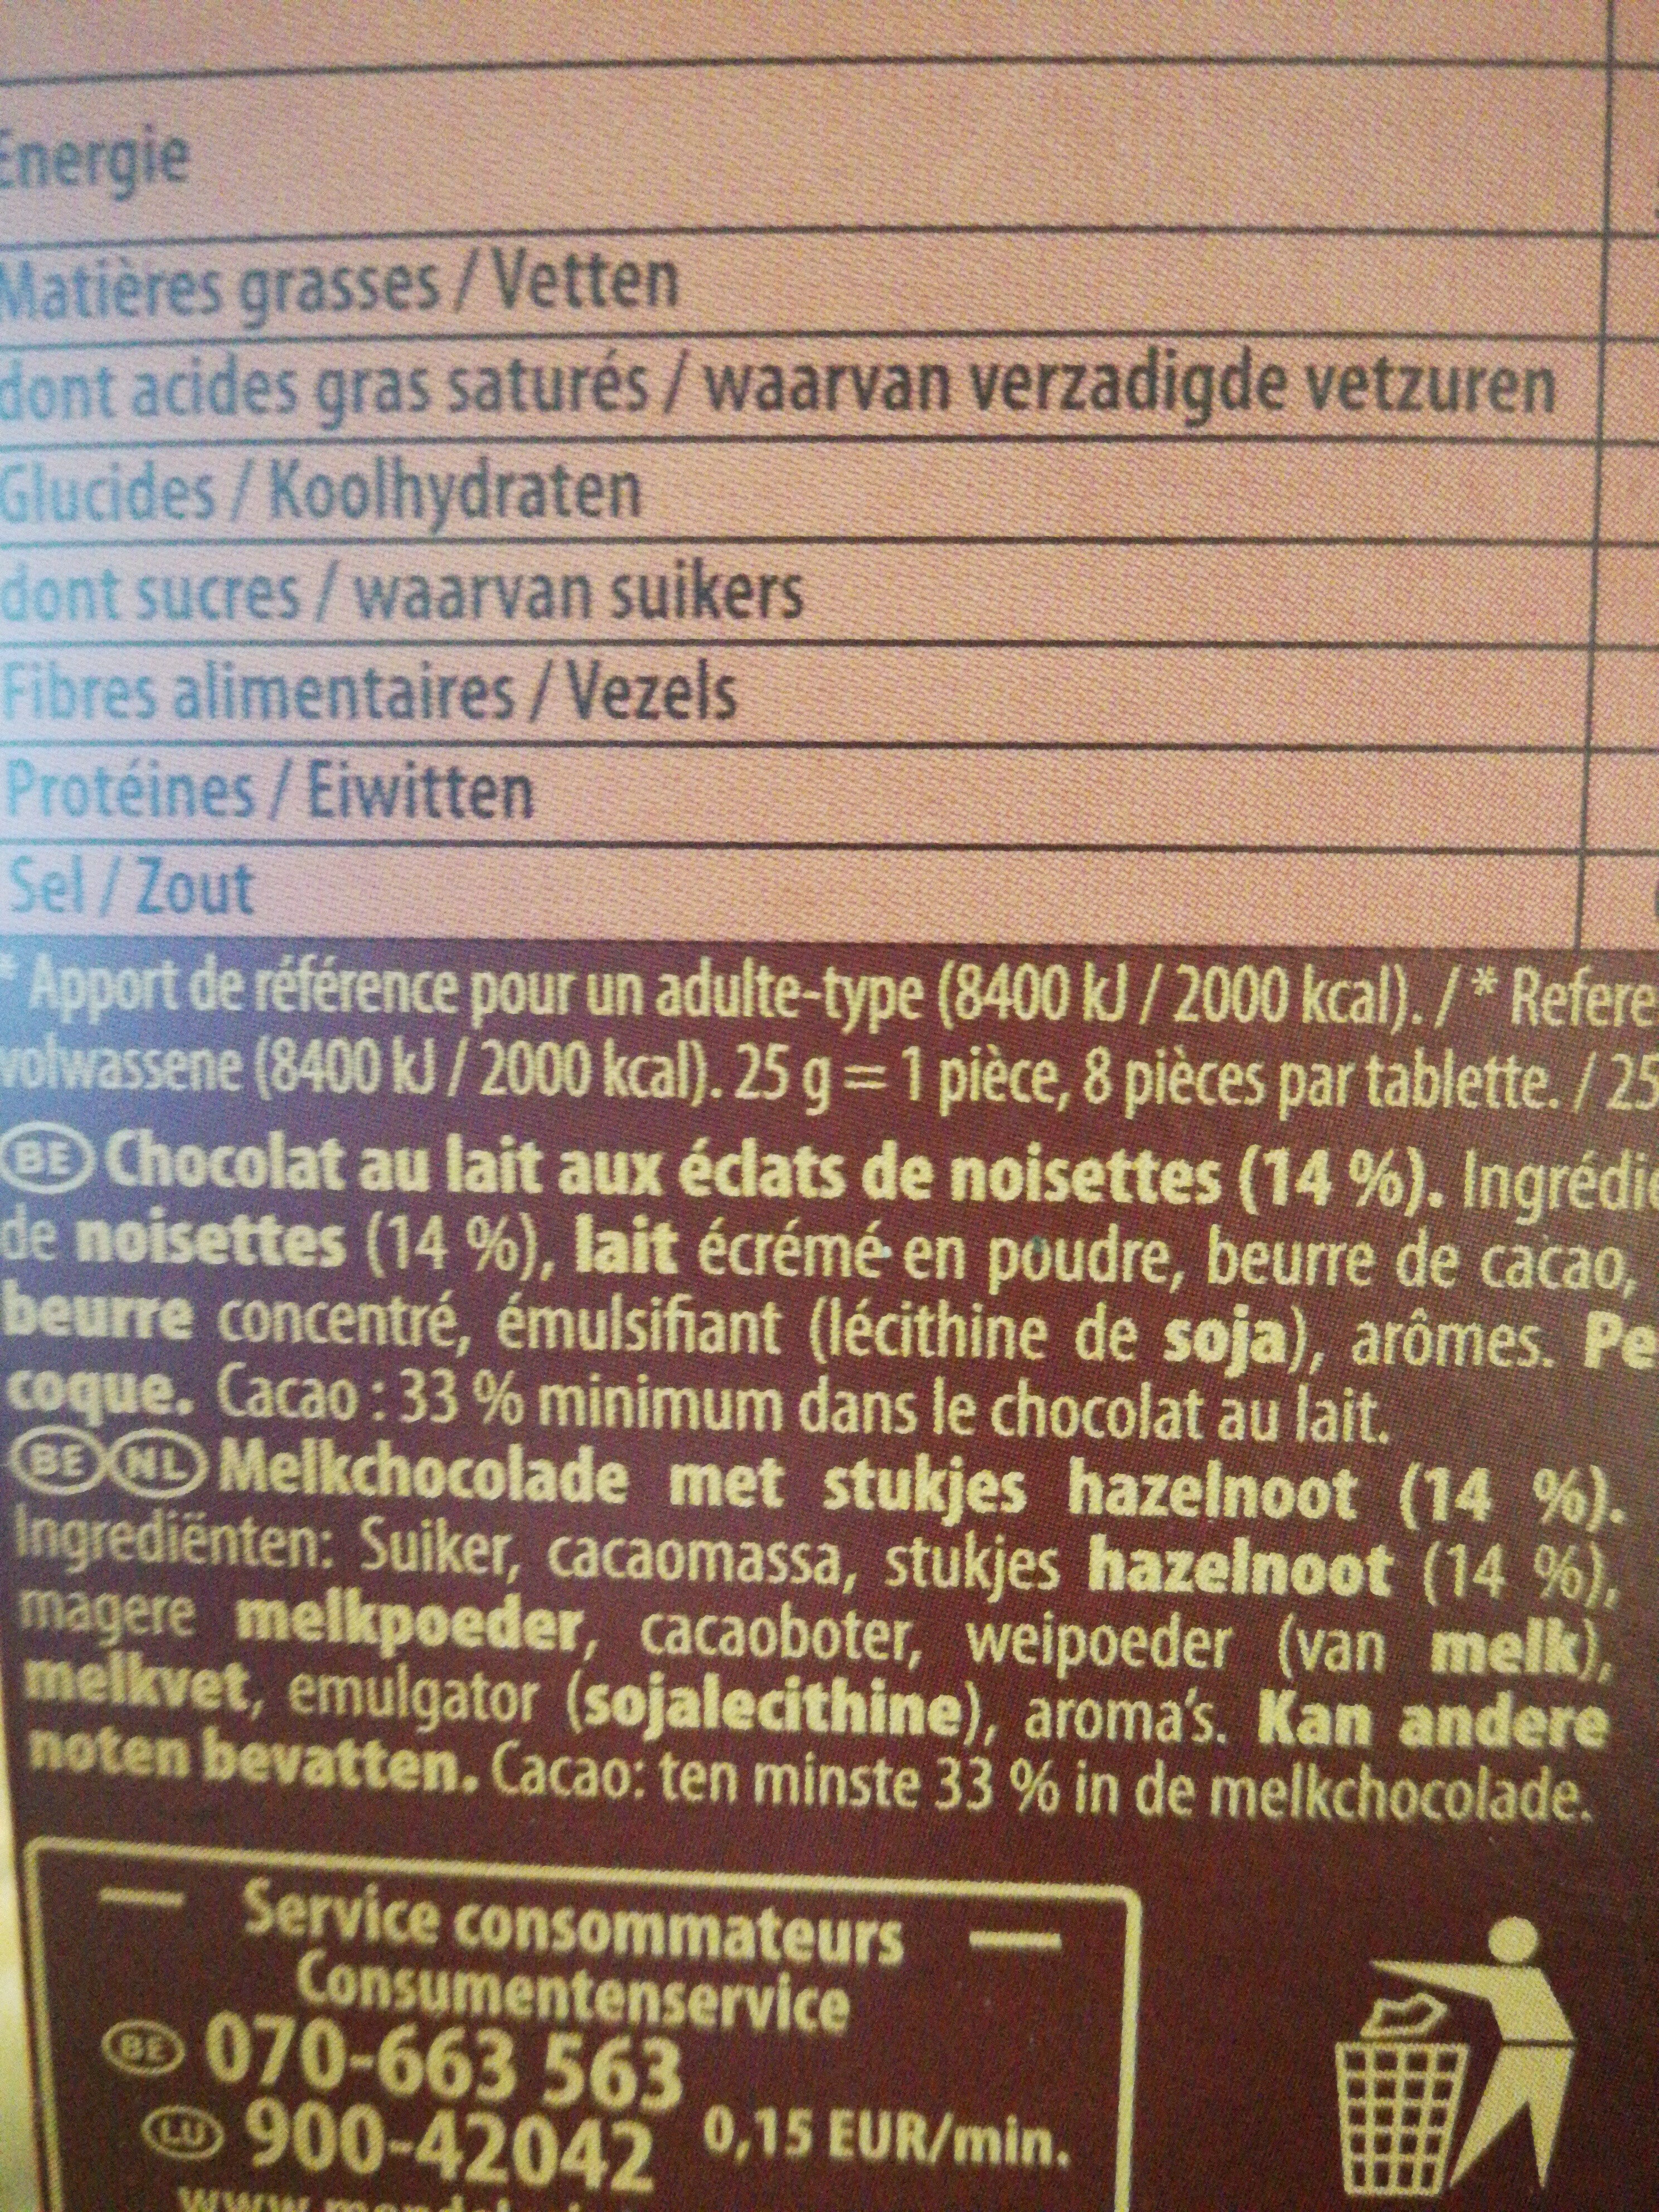 L'original Melk stukjes hazelnoot - Ingredients - nl